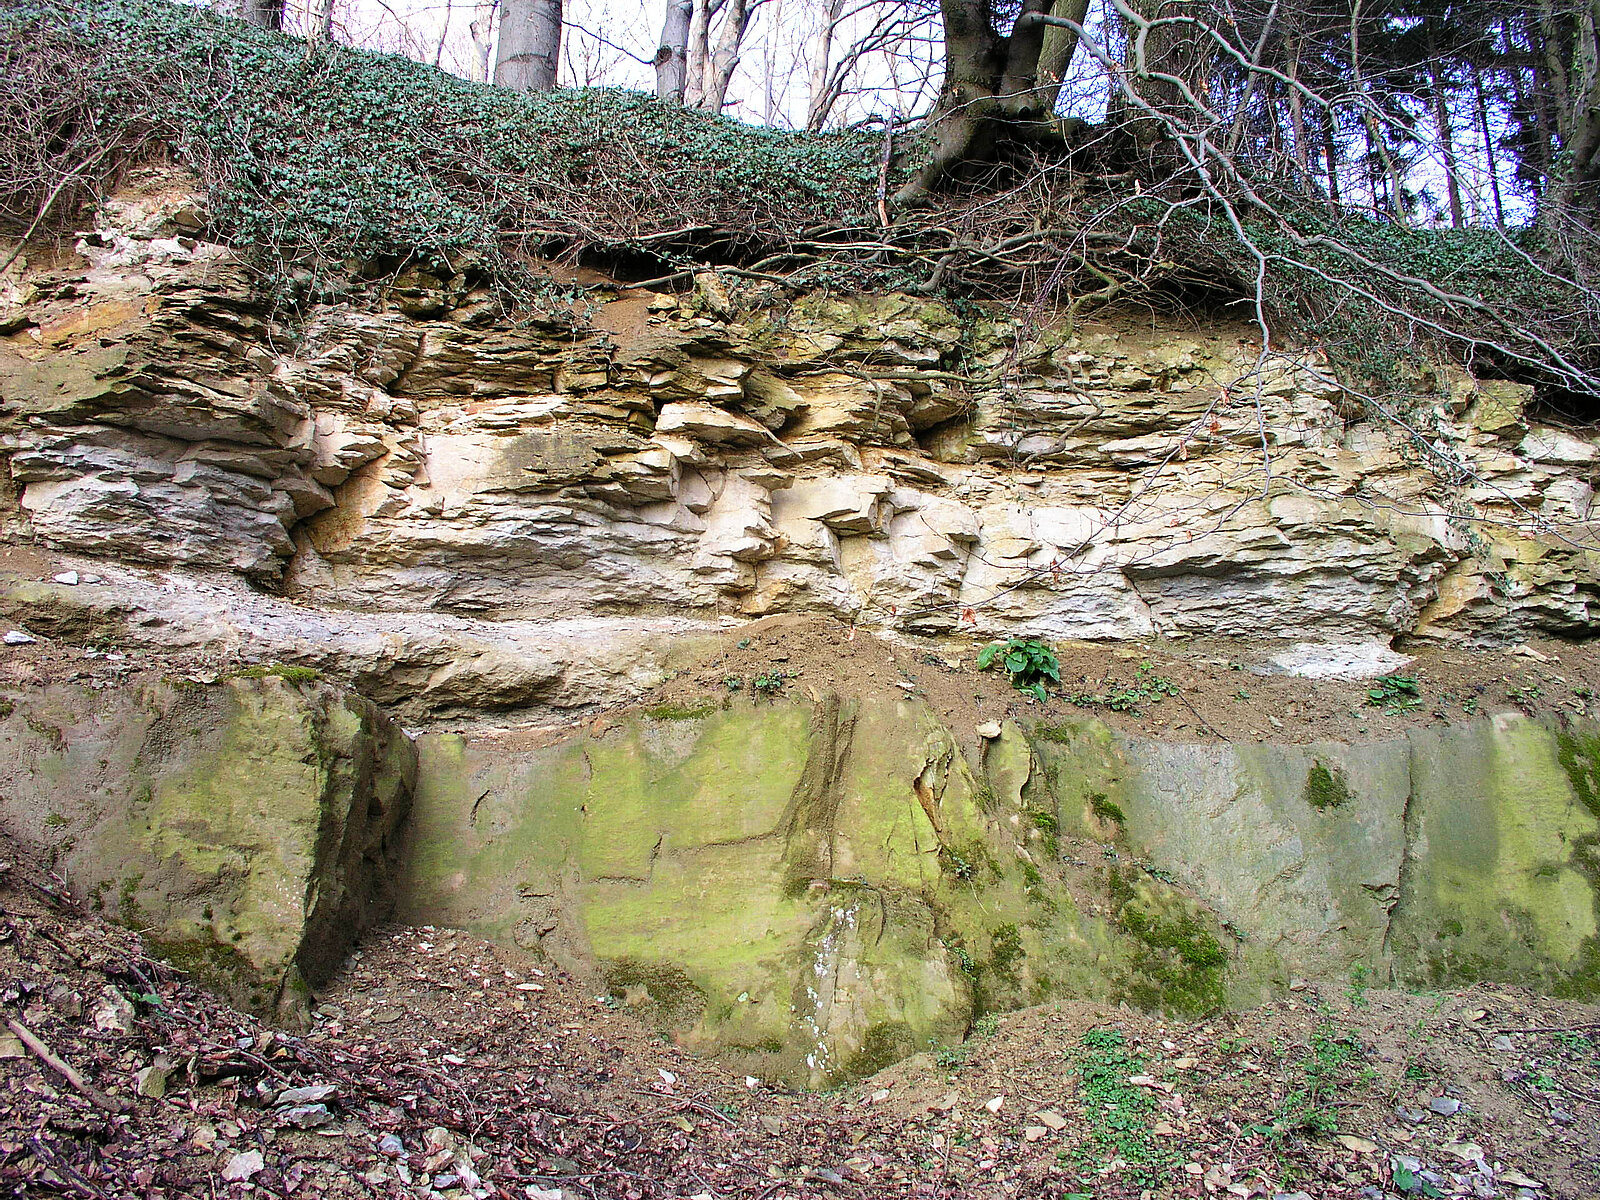 Steinbruch mit dunkelbraunen Sandsteinen im unteren Bereich und hellen Kalksteinen im oberen Bereich